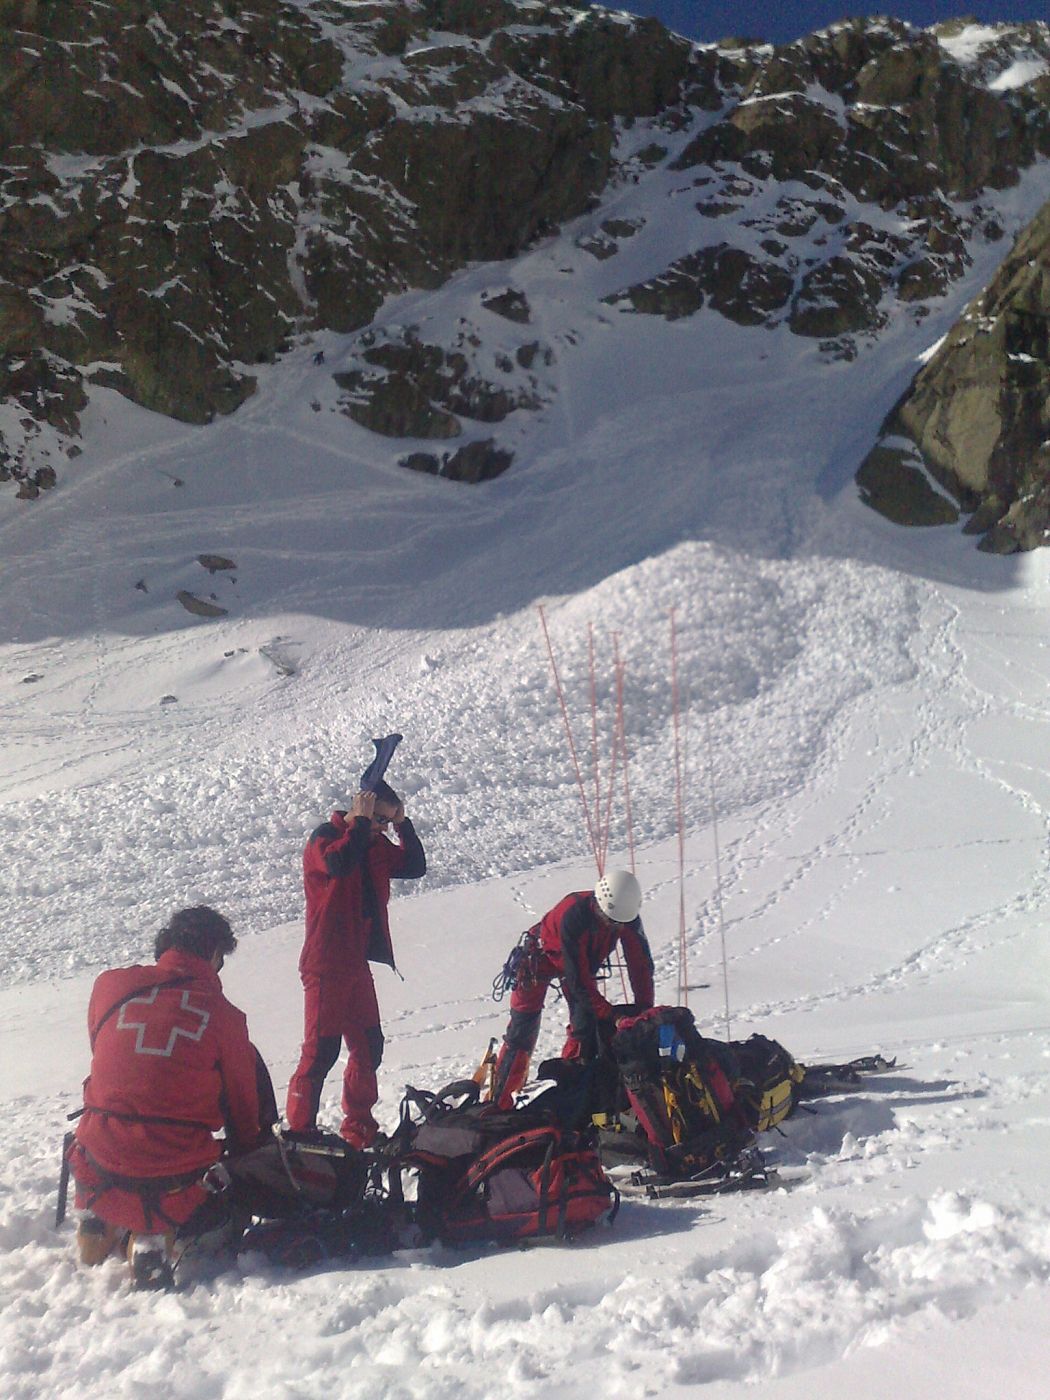 Miembros de los equipos de rescate utilizan sondas para tratar de localizar si hay alguien bajo el alud caído en Pañalara.